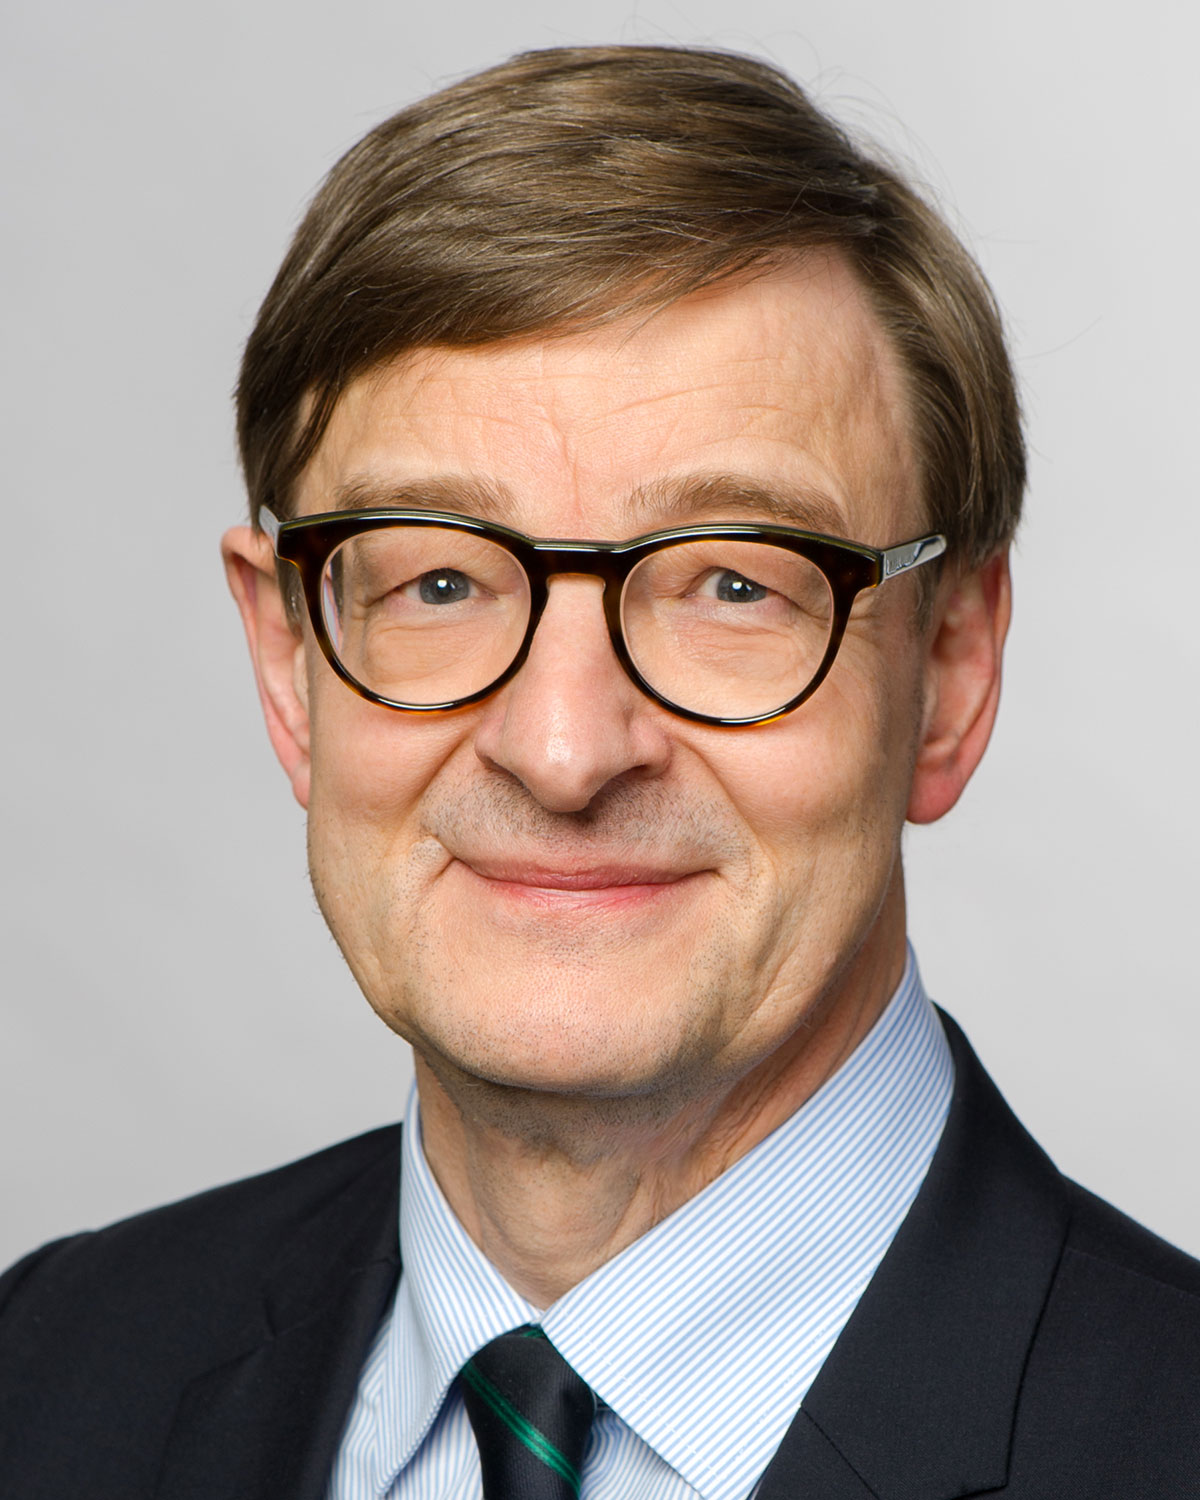 Portrait von Prof. Dr. Dr. h.c. mult. Otmar Wiestler, Vorsitzender des Hochschulrats der TUM, Präsident der Helmholtz-Gemeinschaft